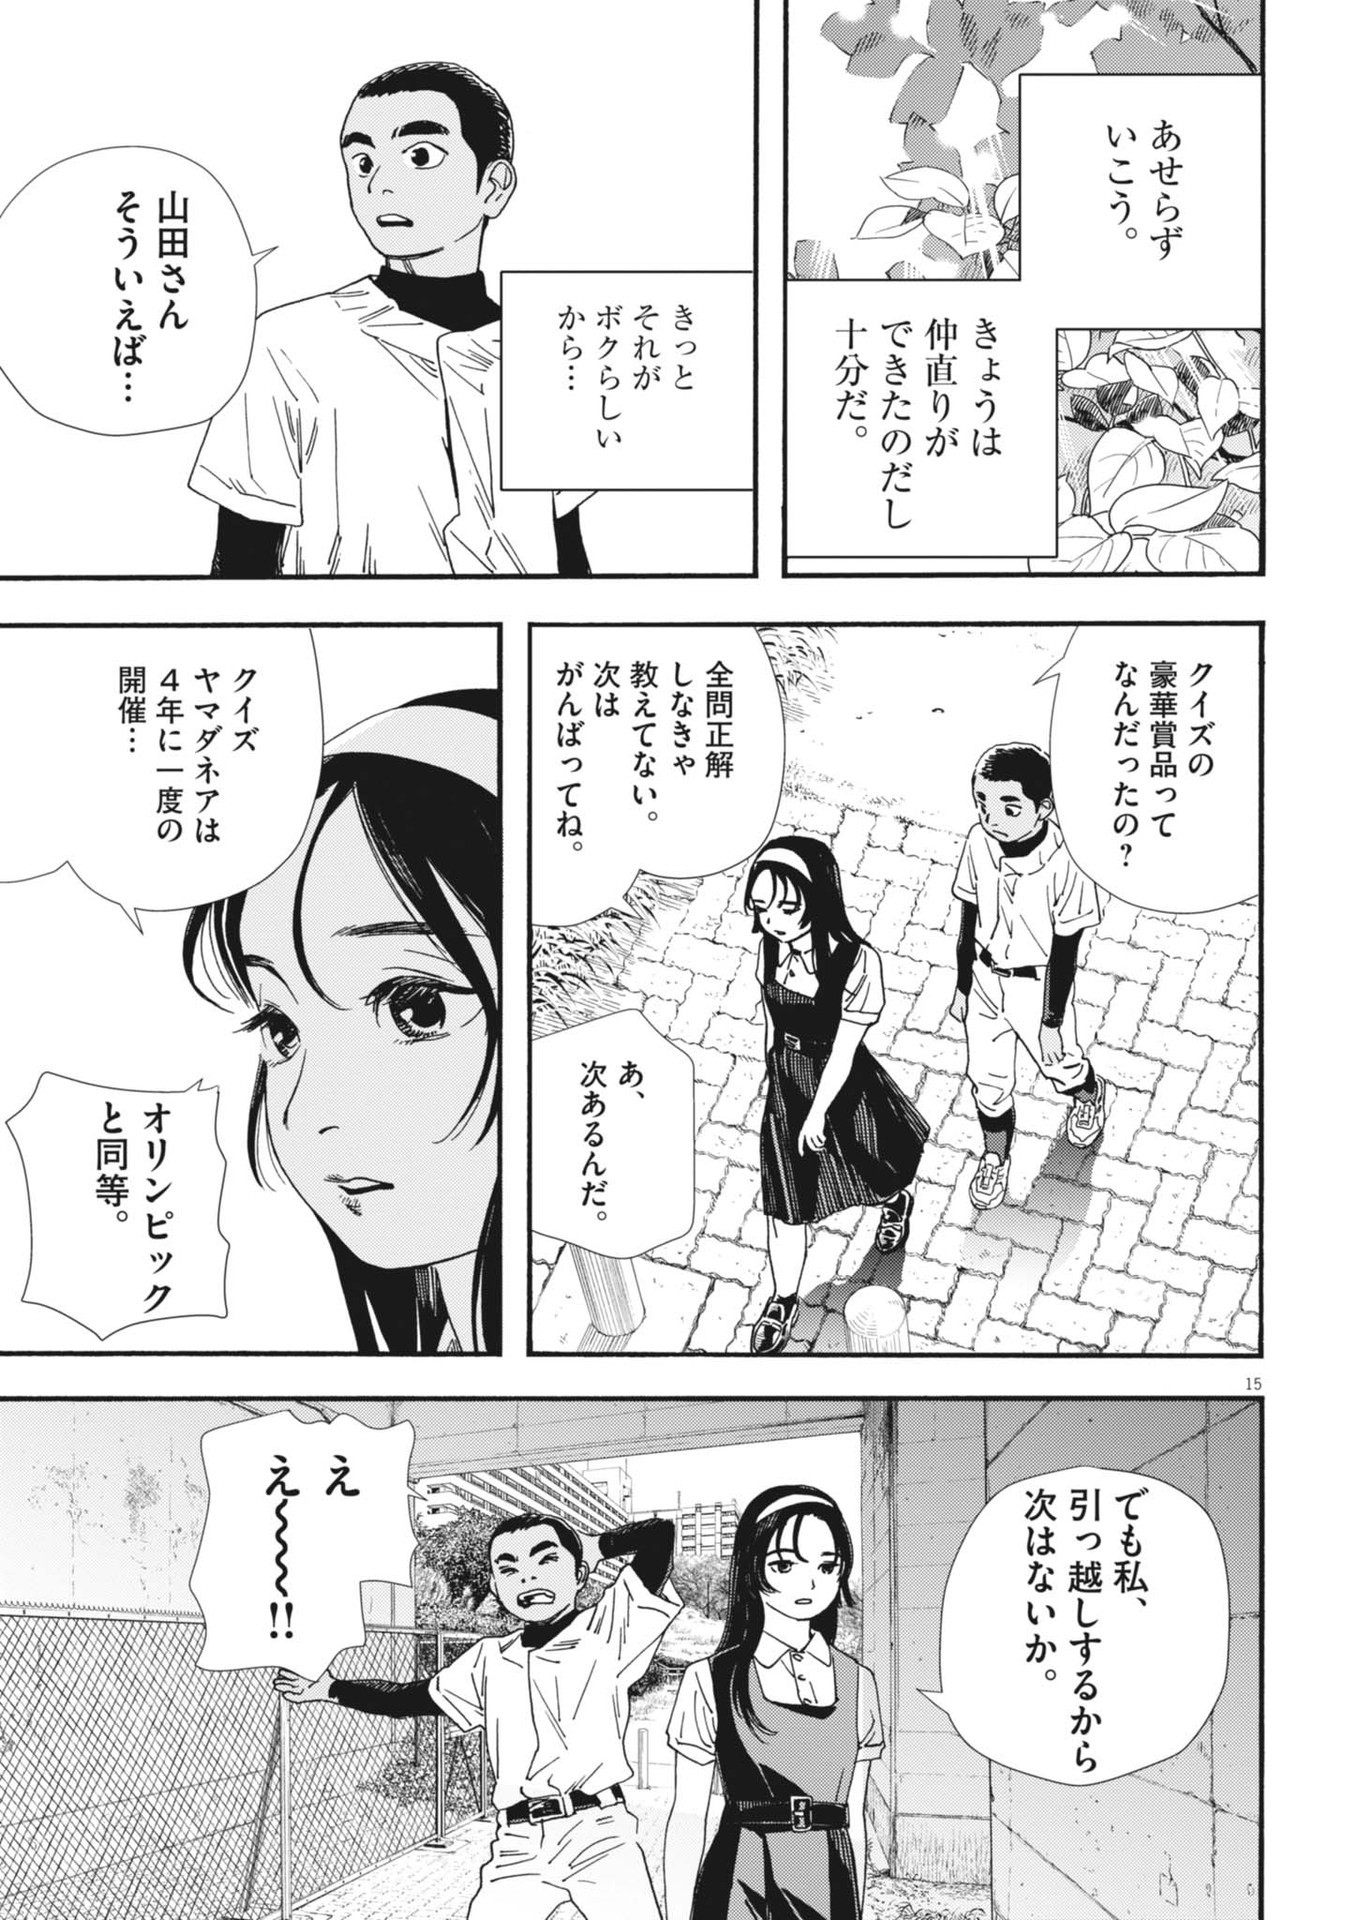 Hoshino-kun, Shitagatte! - Chapter 11 - Page 15